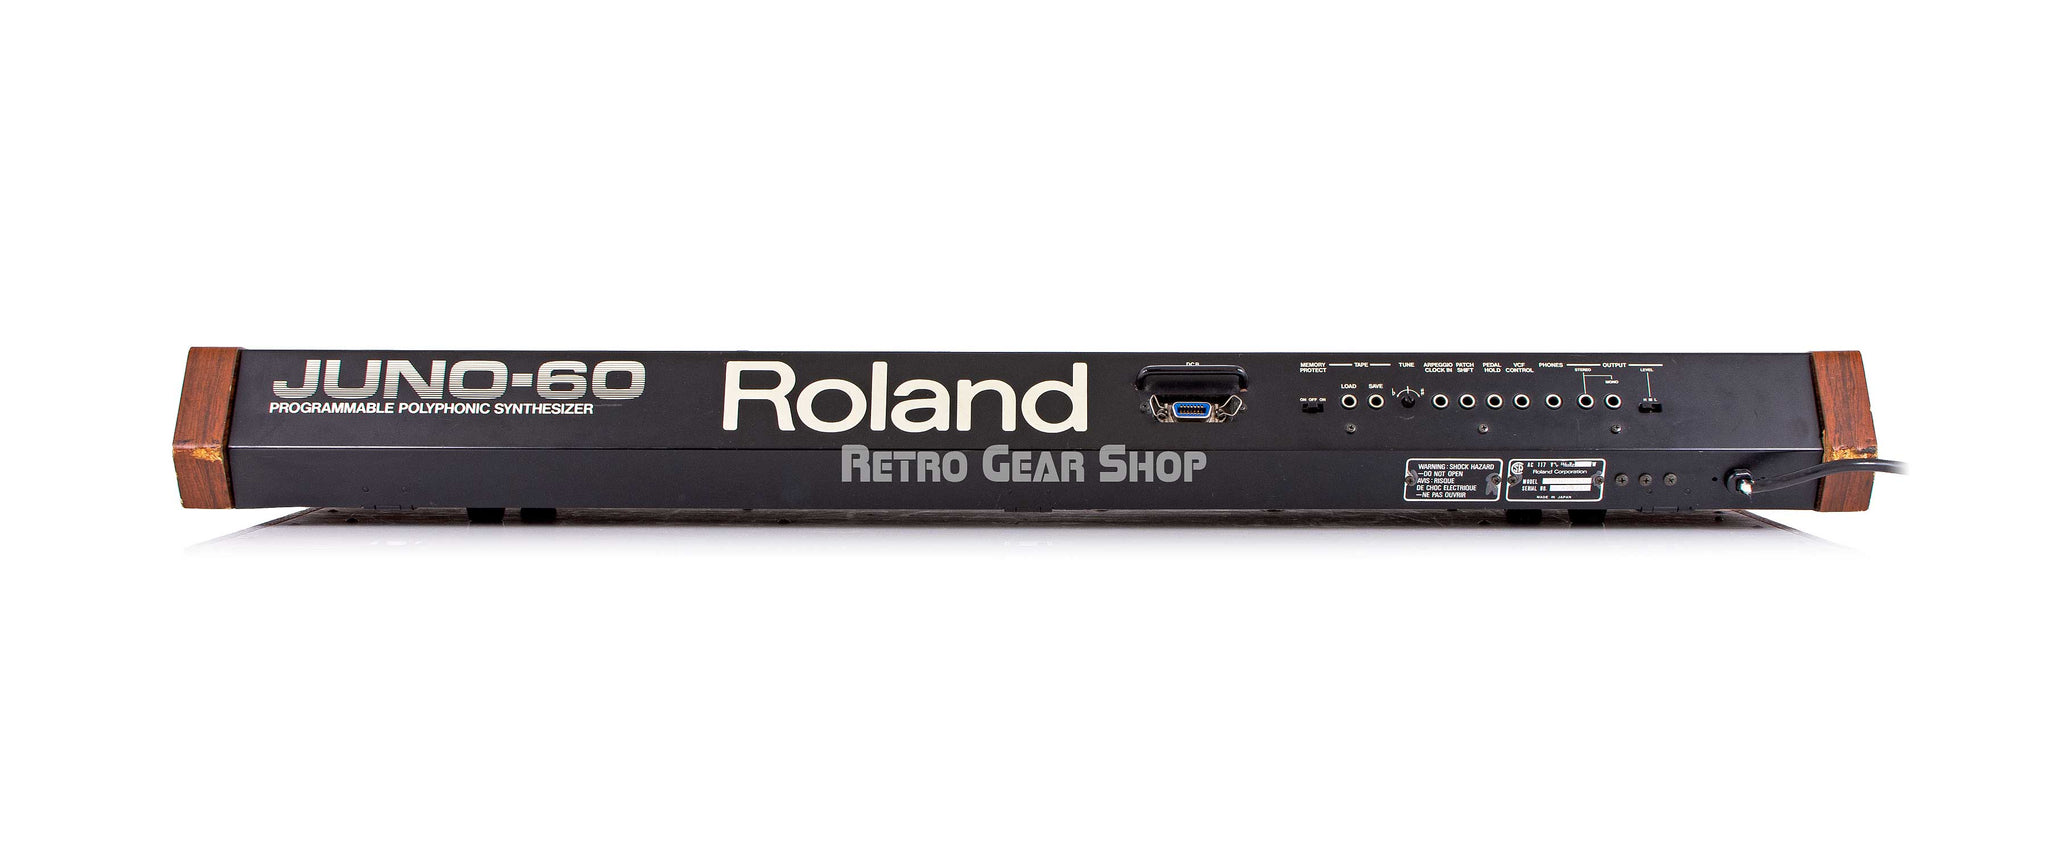 Roland Juno 60 Rear